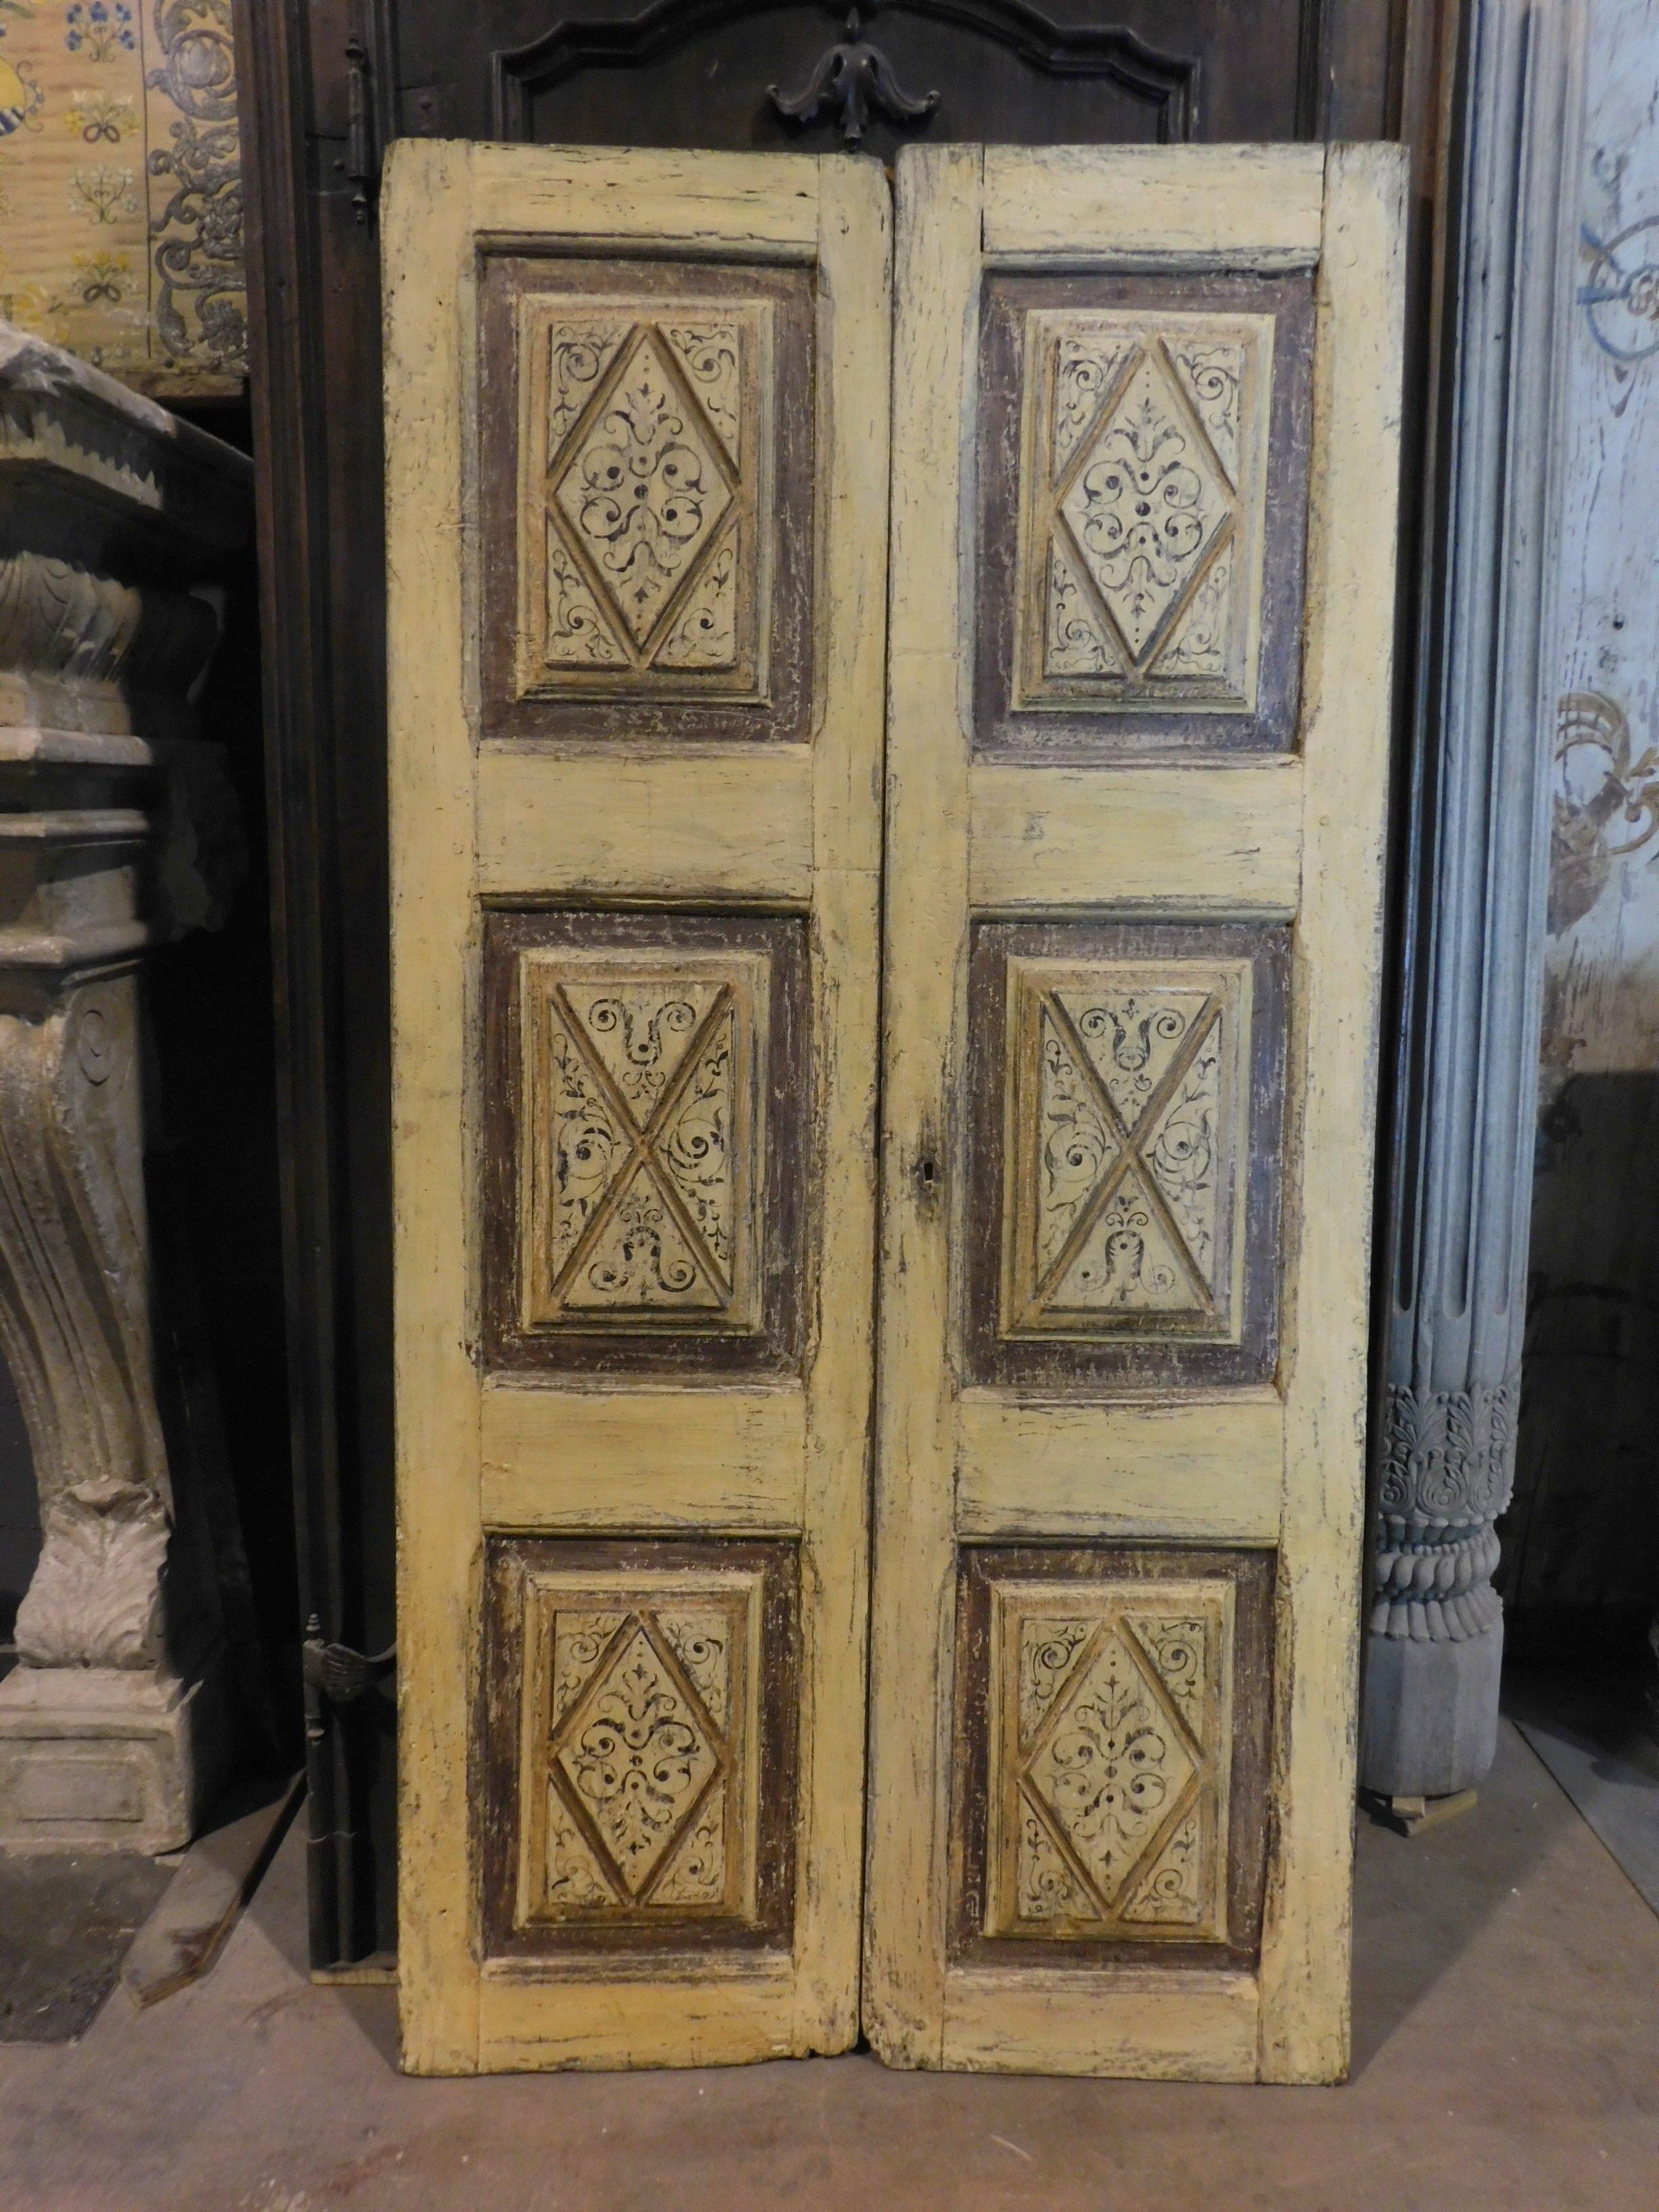 Die antike Doppeltür aus gelb lackiertem Holz mit geschnitzten und bemalten Rauten mit Motiven aus dem 18. Jahrhundert stammt aus einem Adelspalast in Piemont, Italien.
Es eignet sich sowohl als dekorative Platte als auch als Tür, sehr elegant und